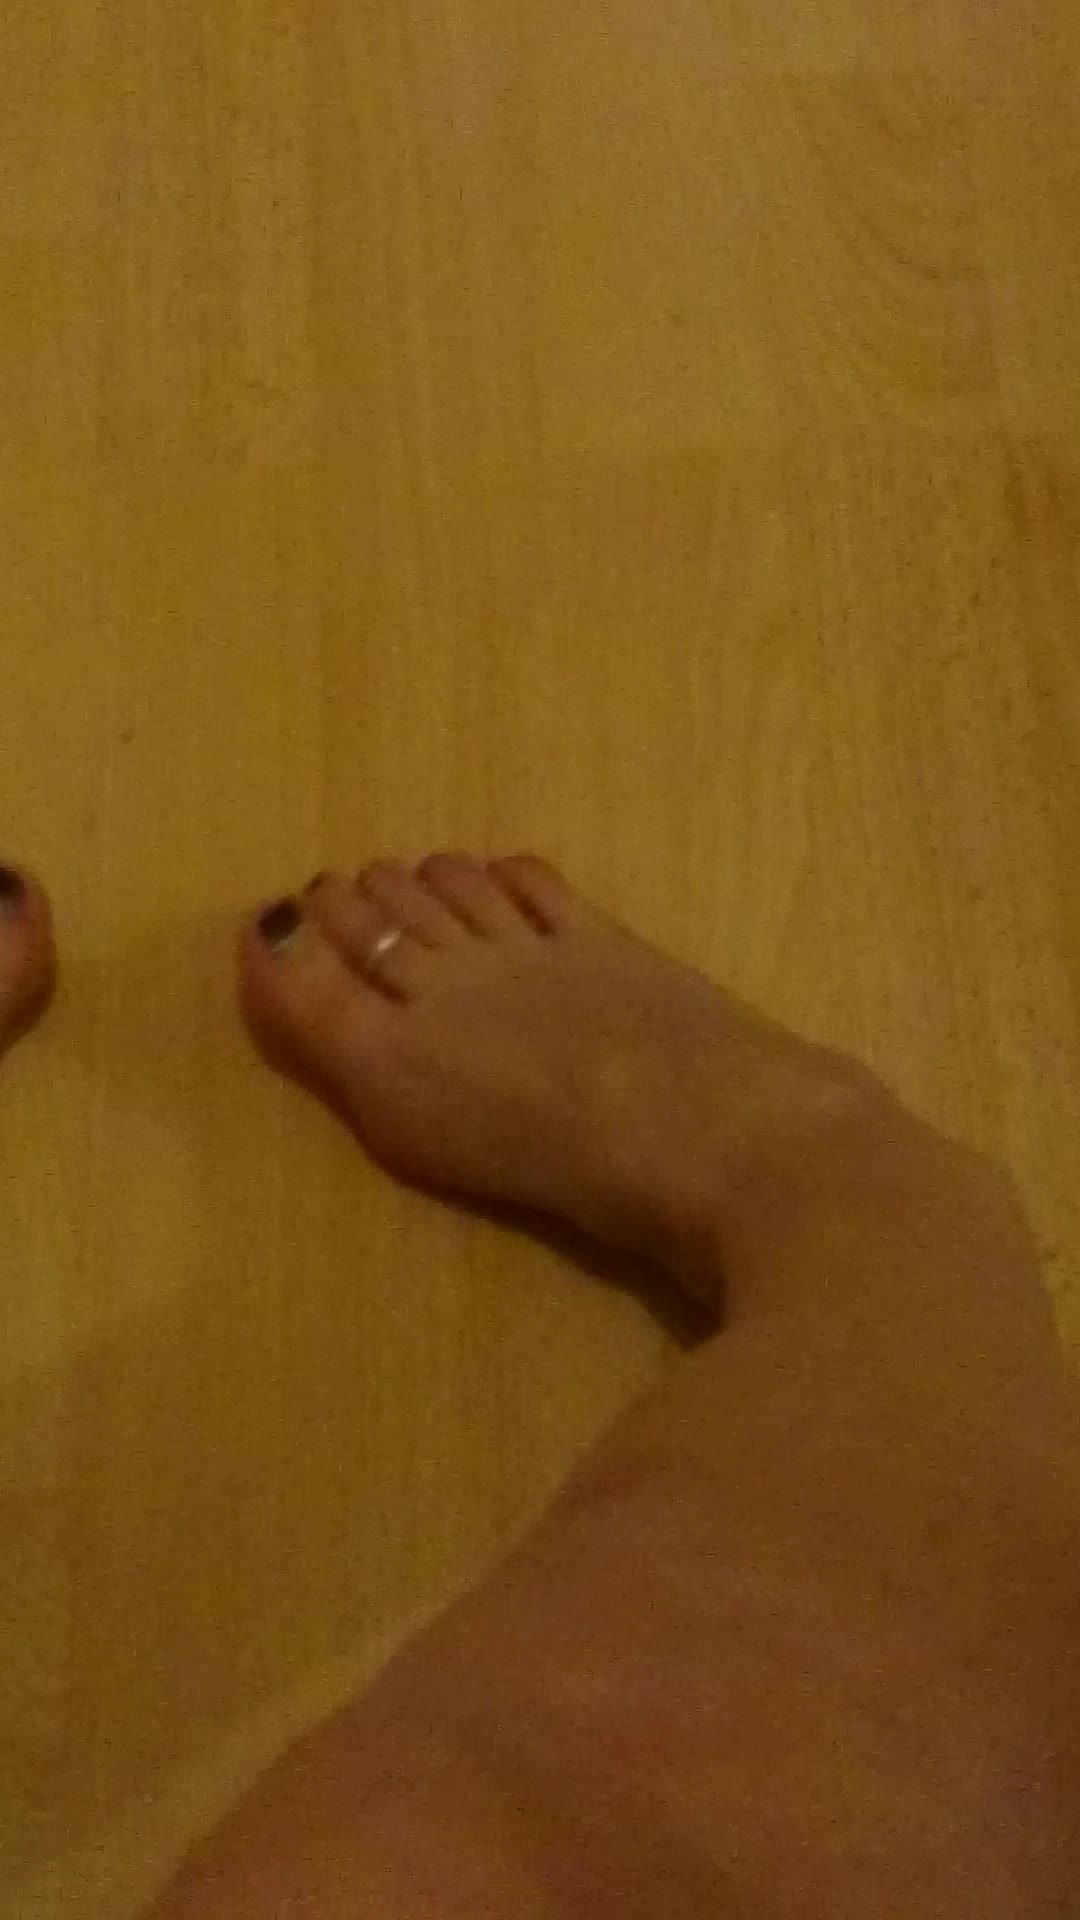 Foot Lovers